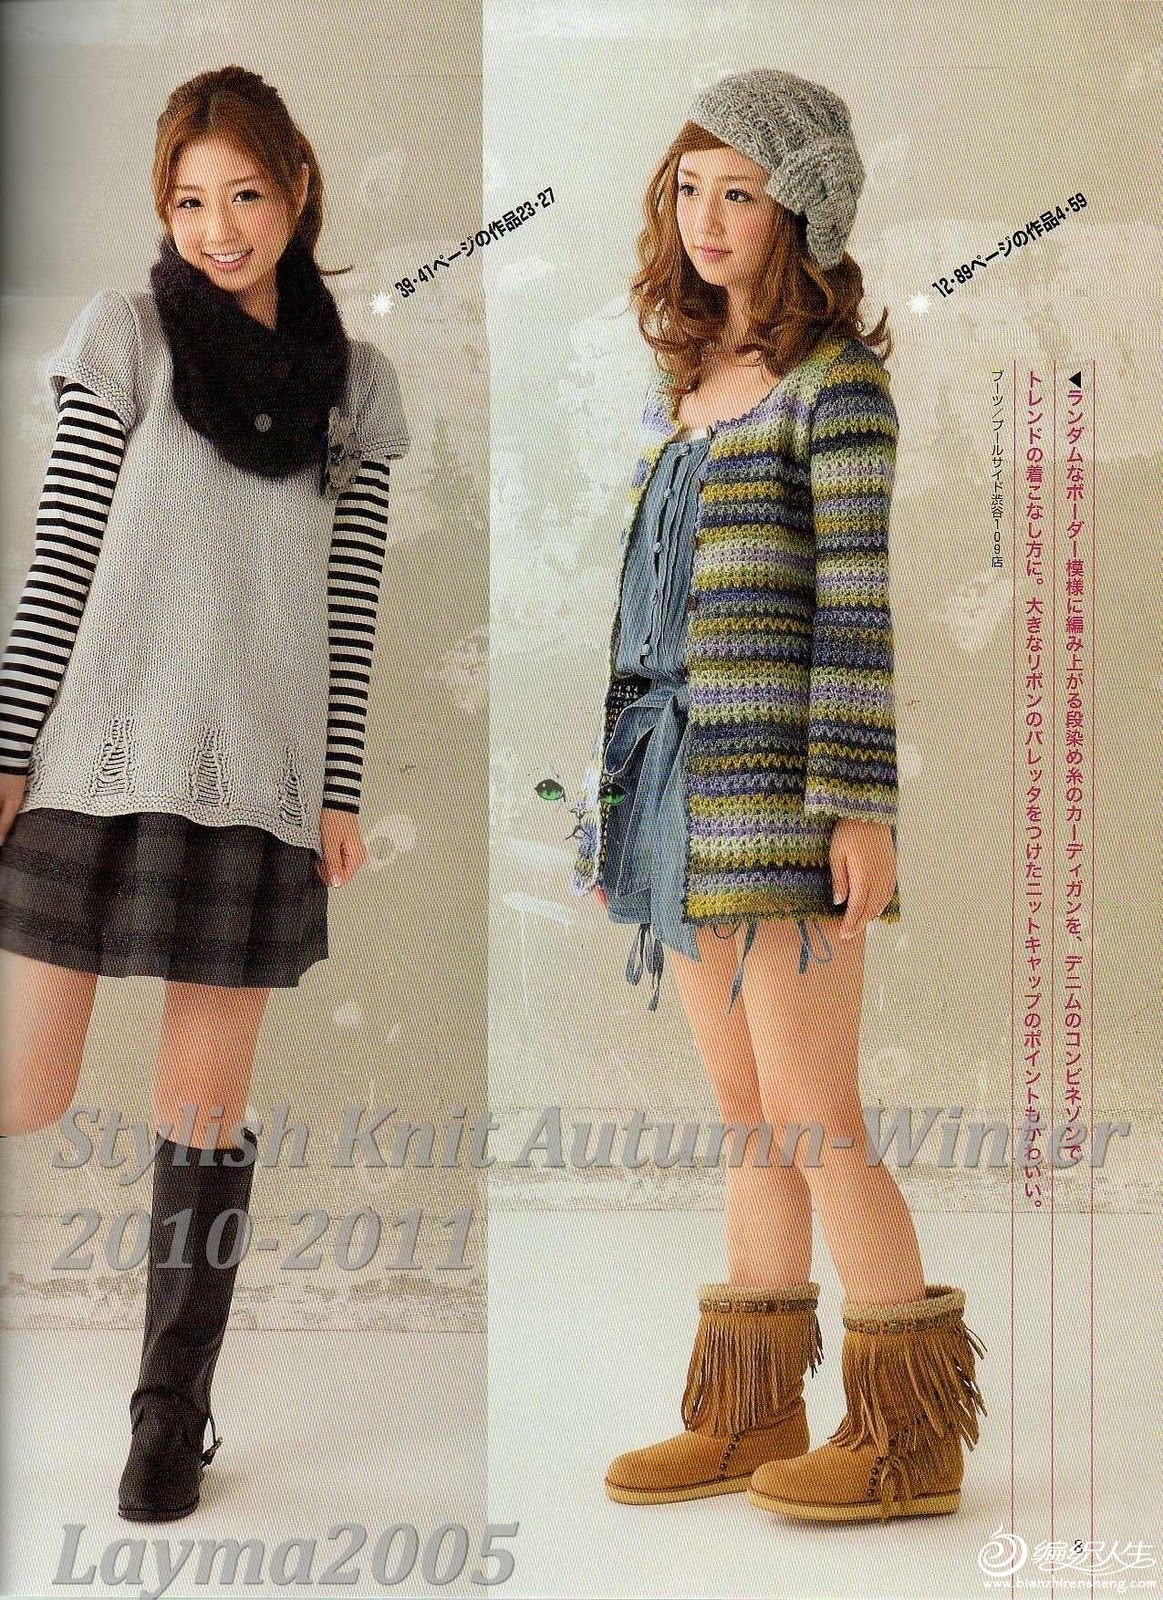 Stylish Knit Autumn-Winter 2010-2011007.jpg